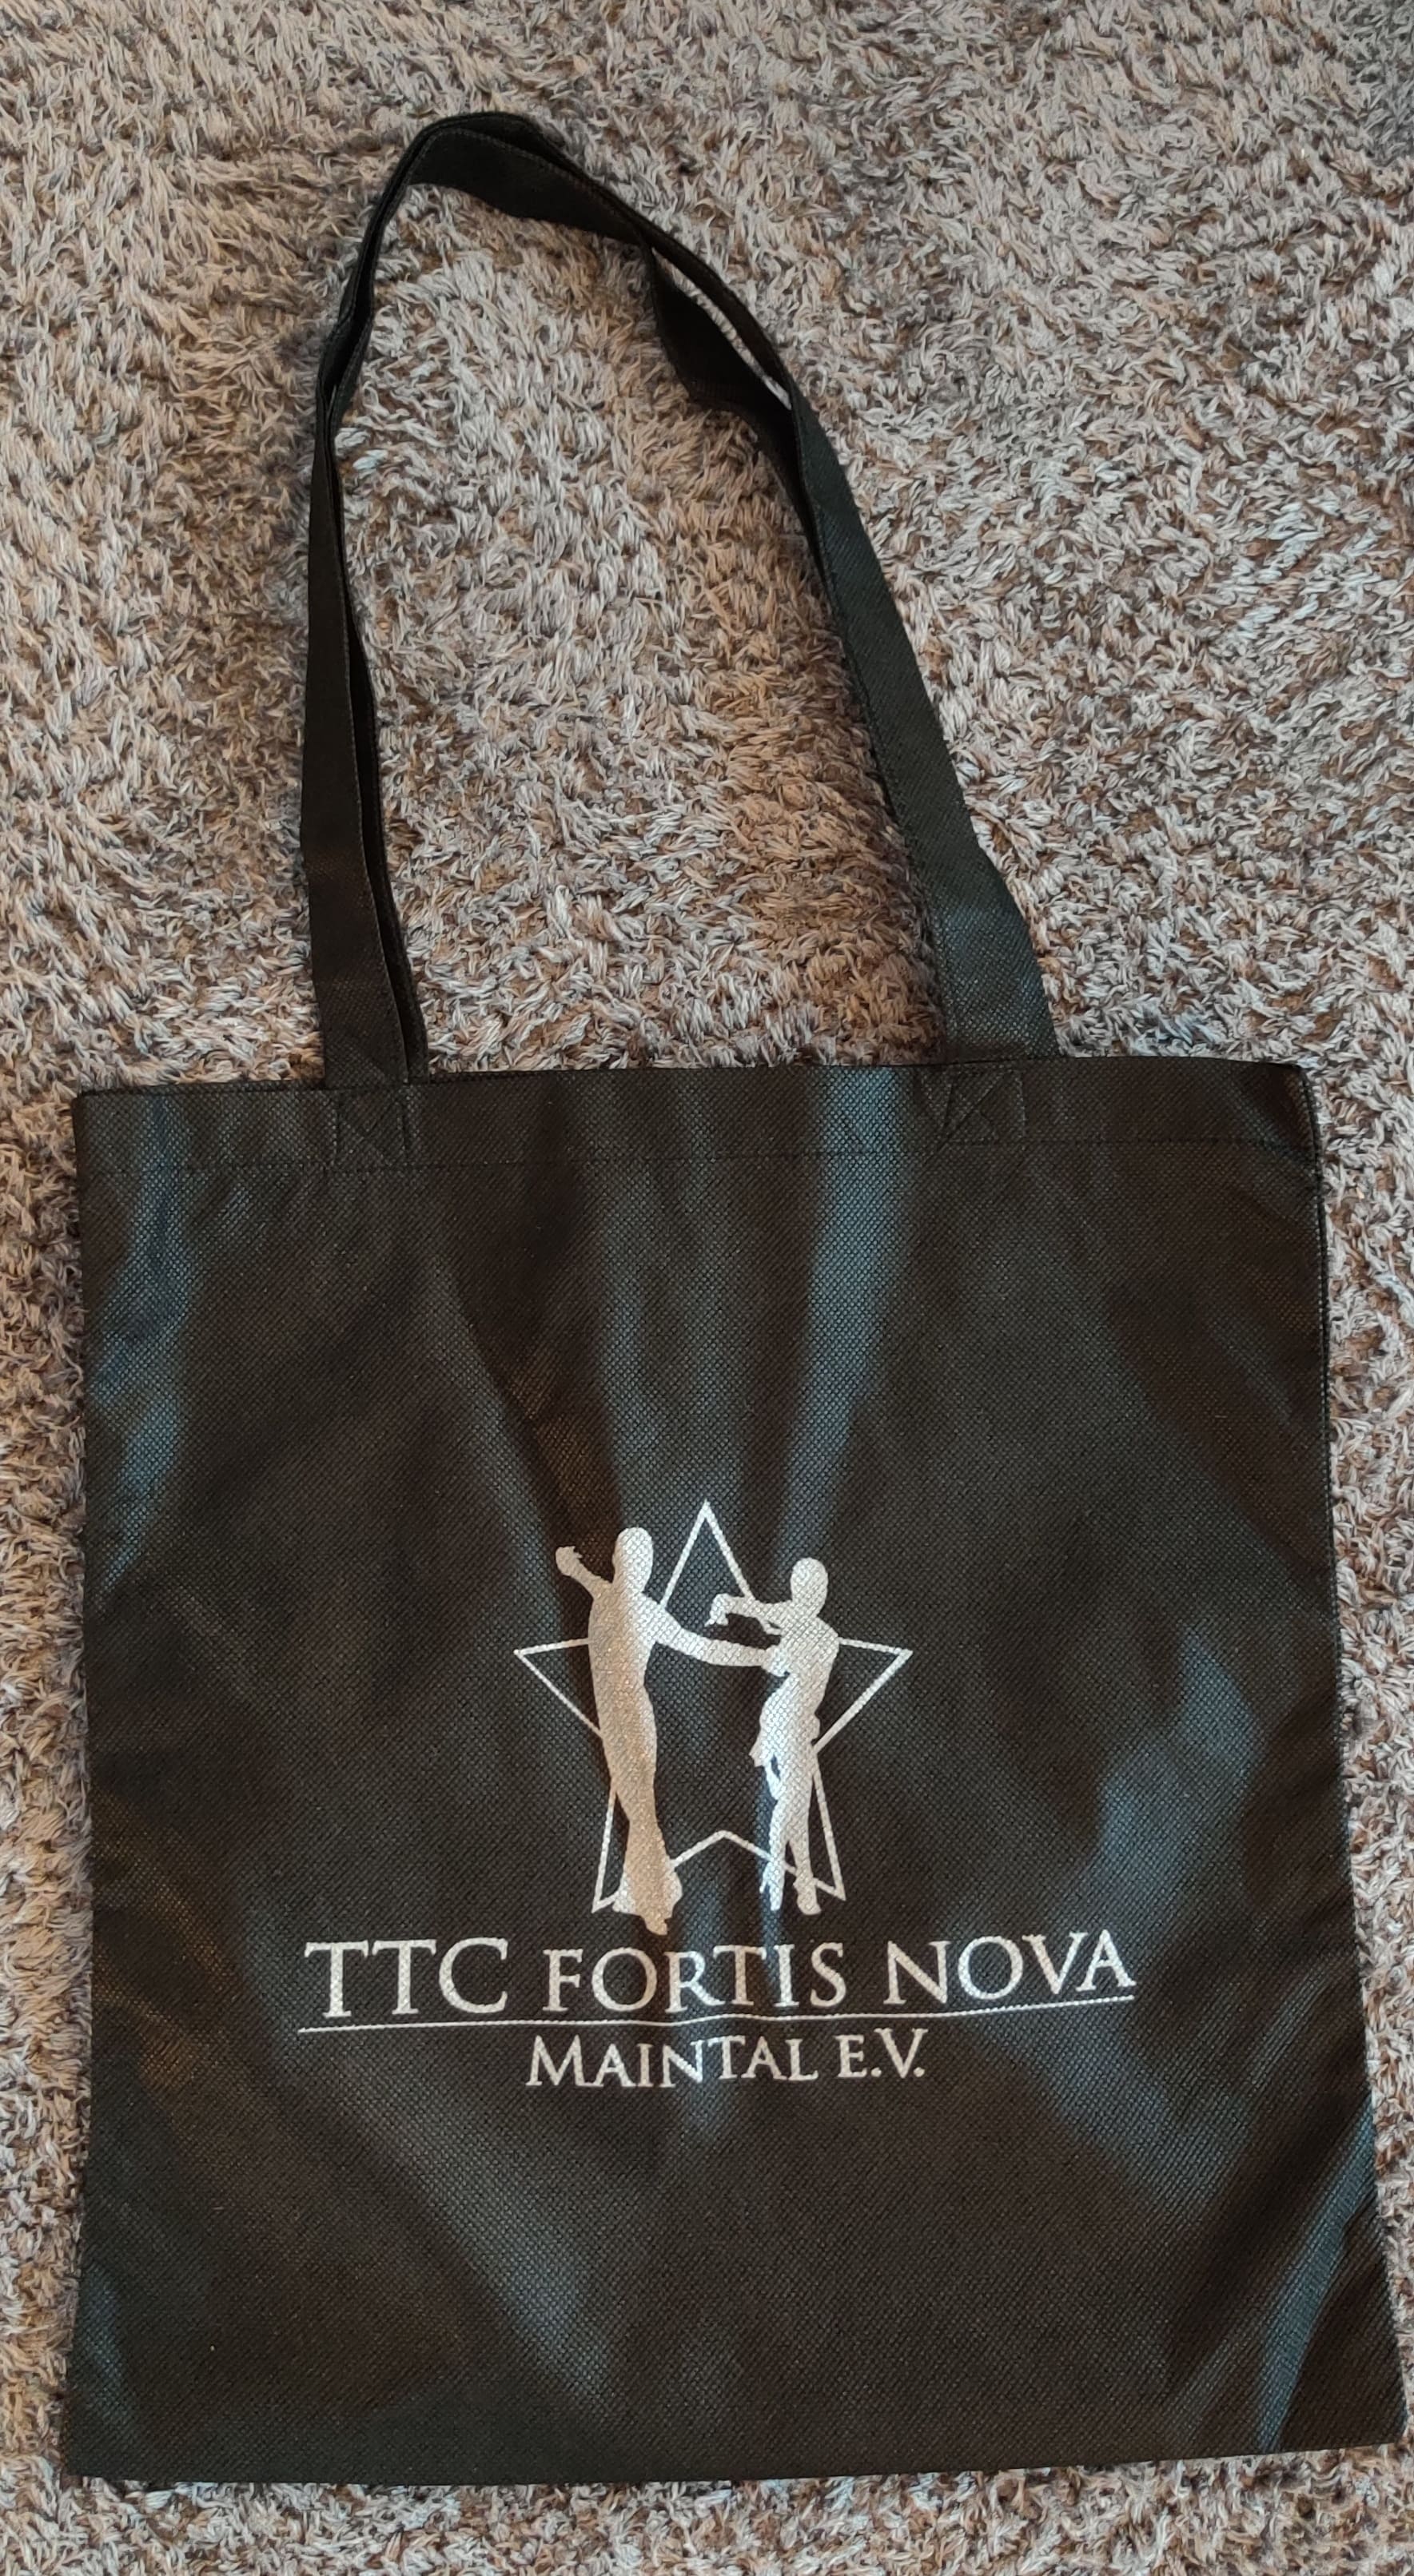 Tasche mit Fortis Nova Aufdruck